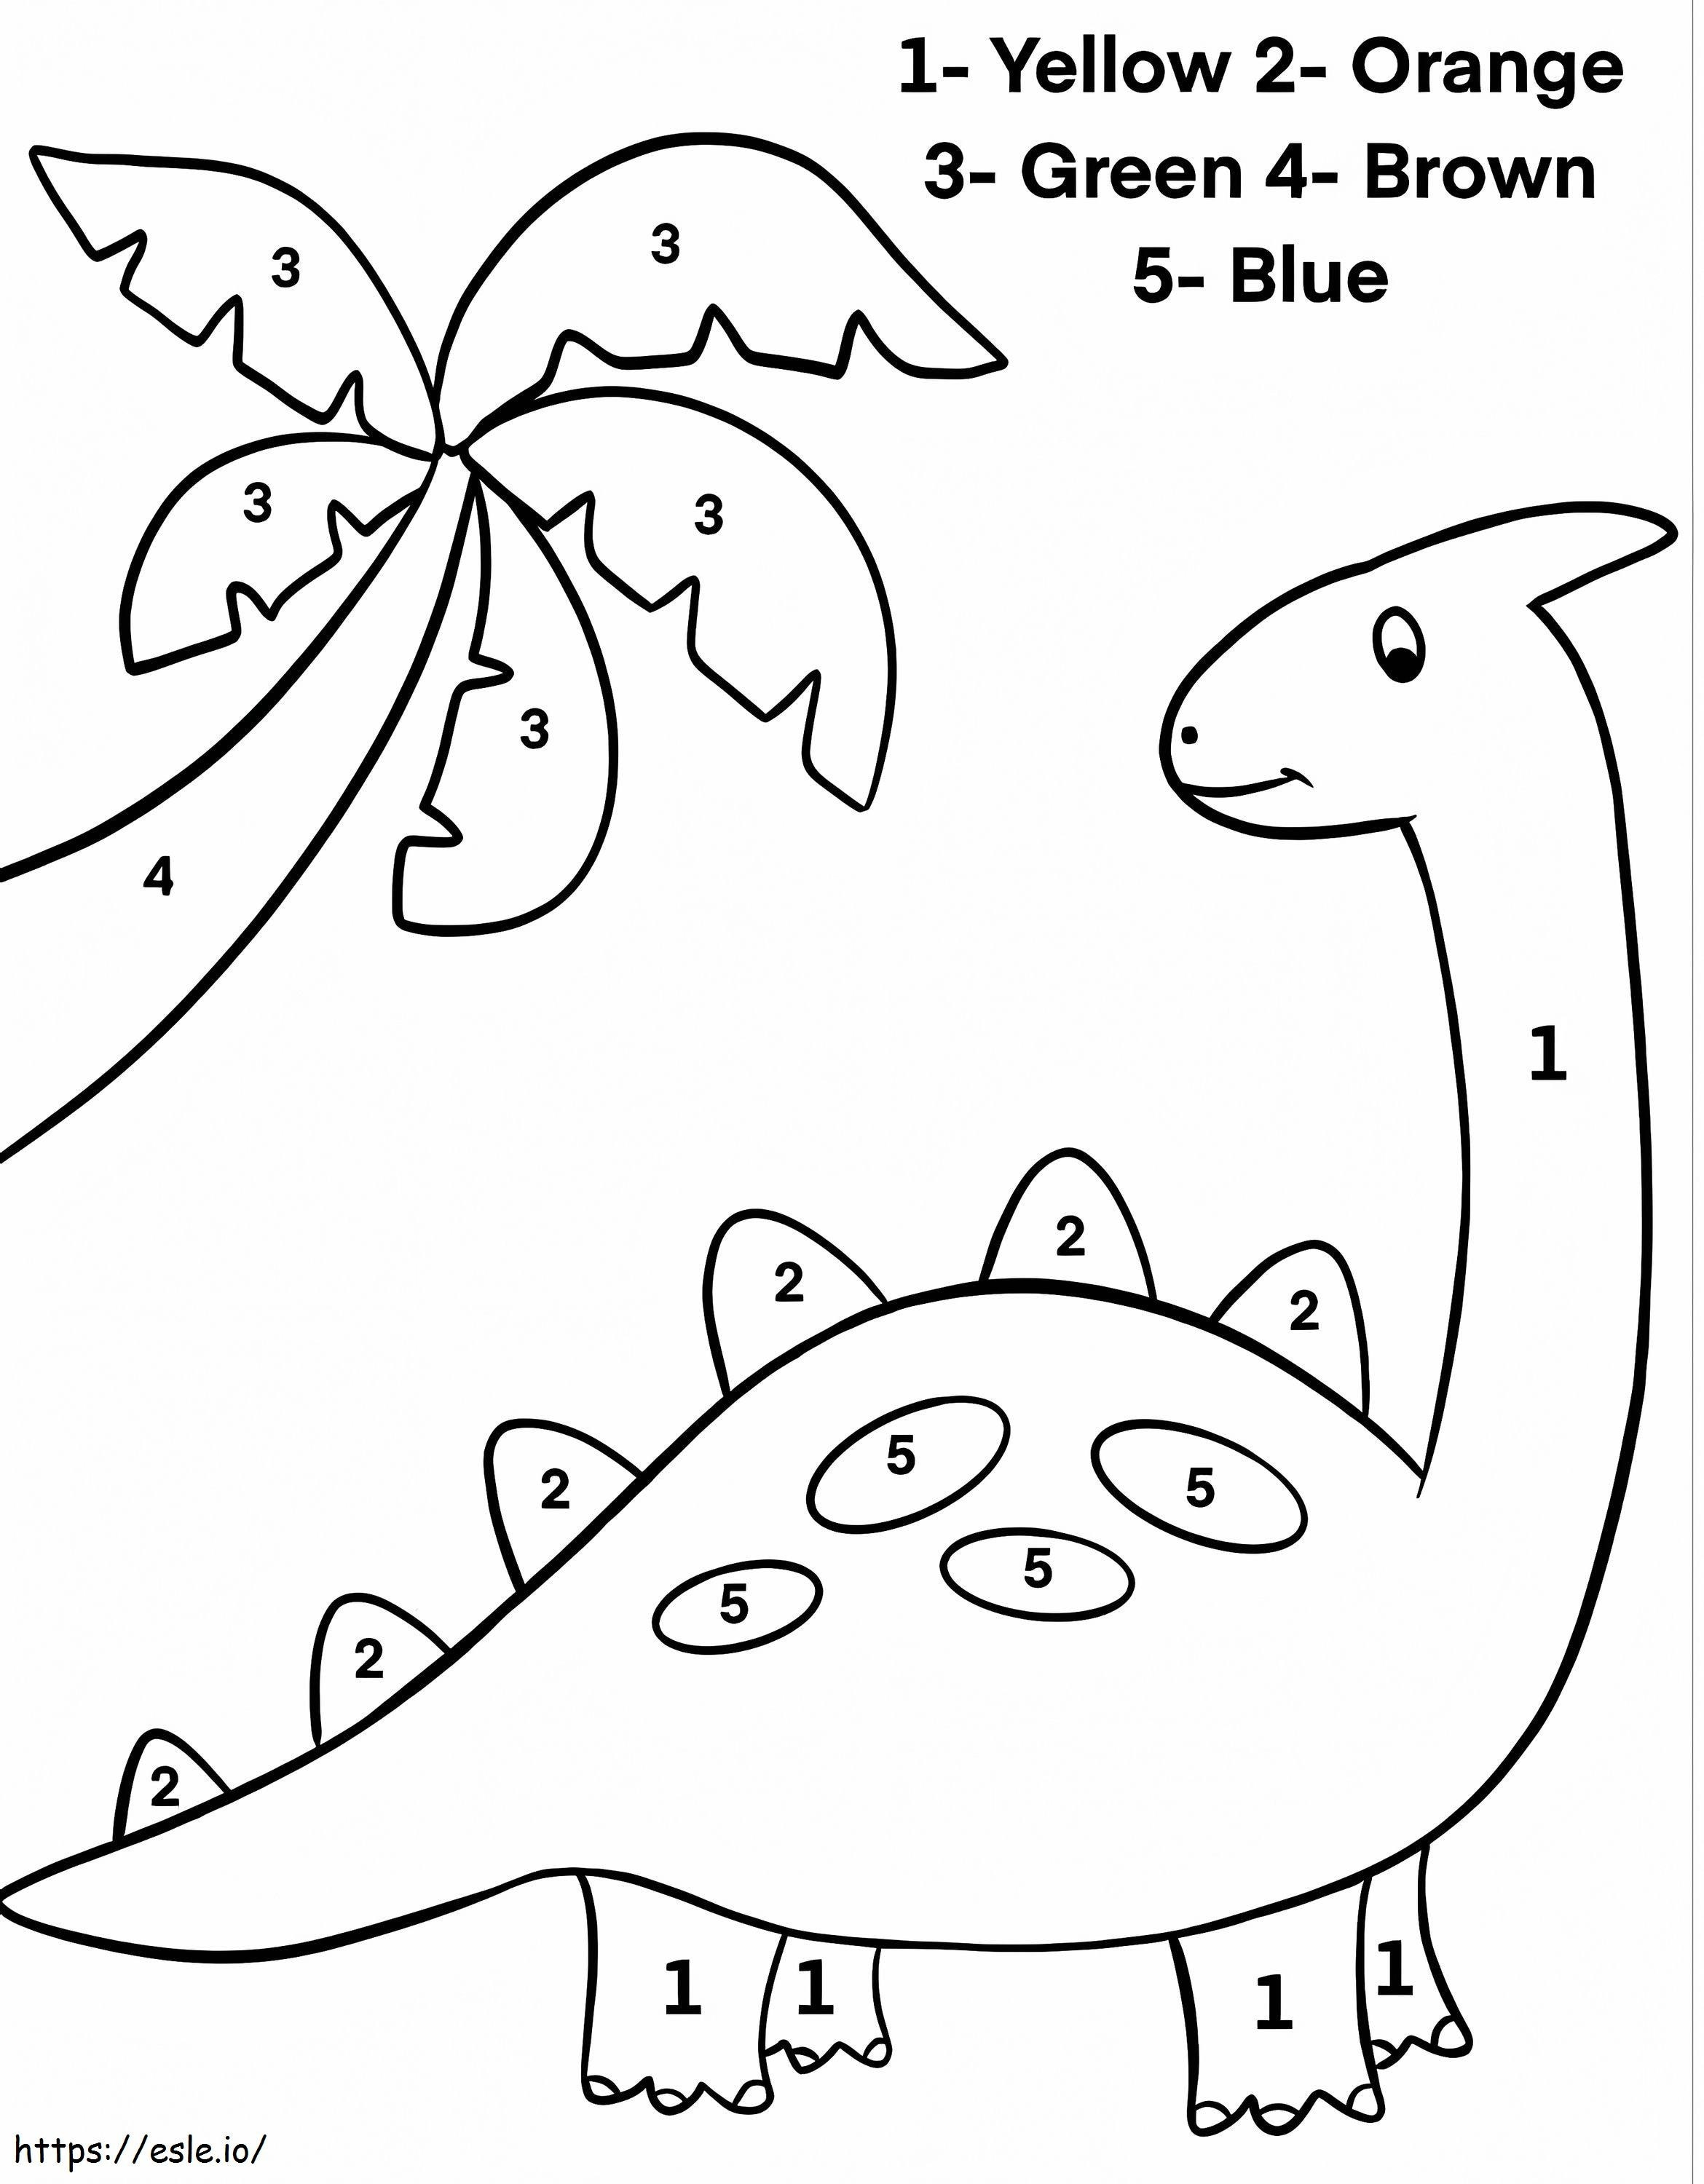 Colorear por Números a un Dino Adorable para colorear